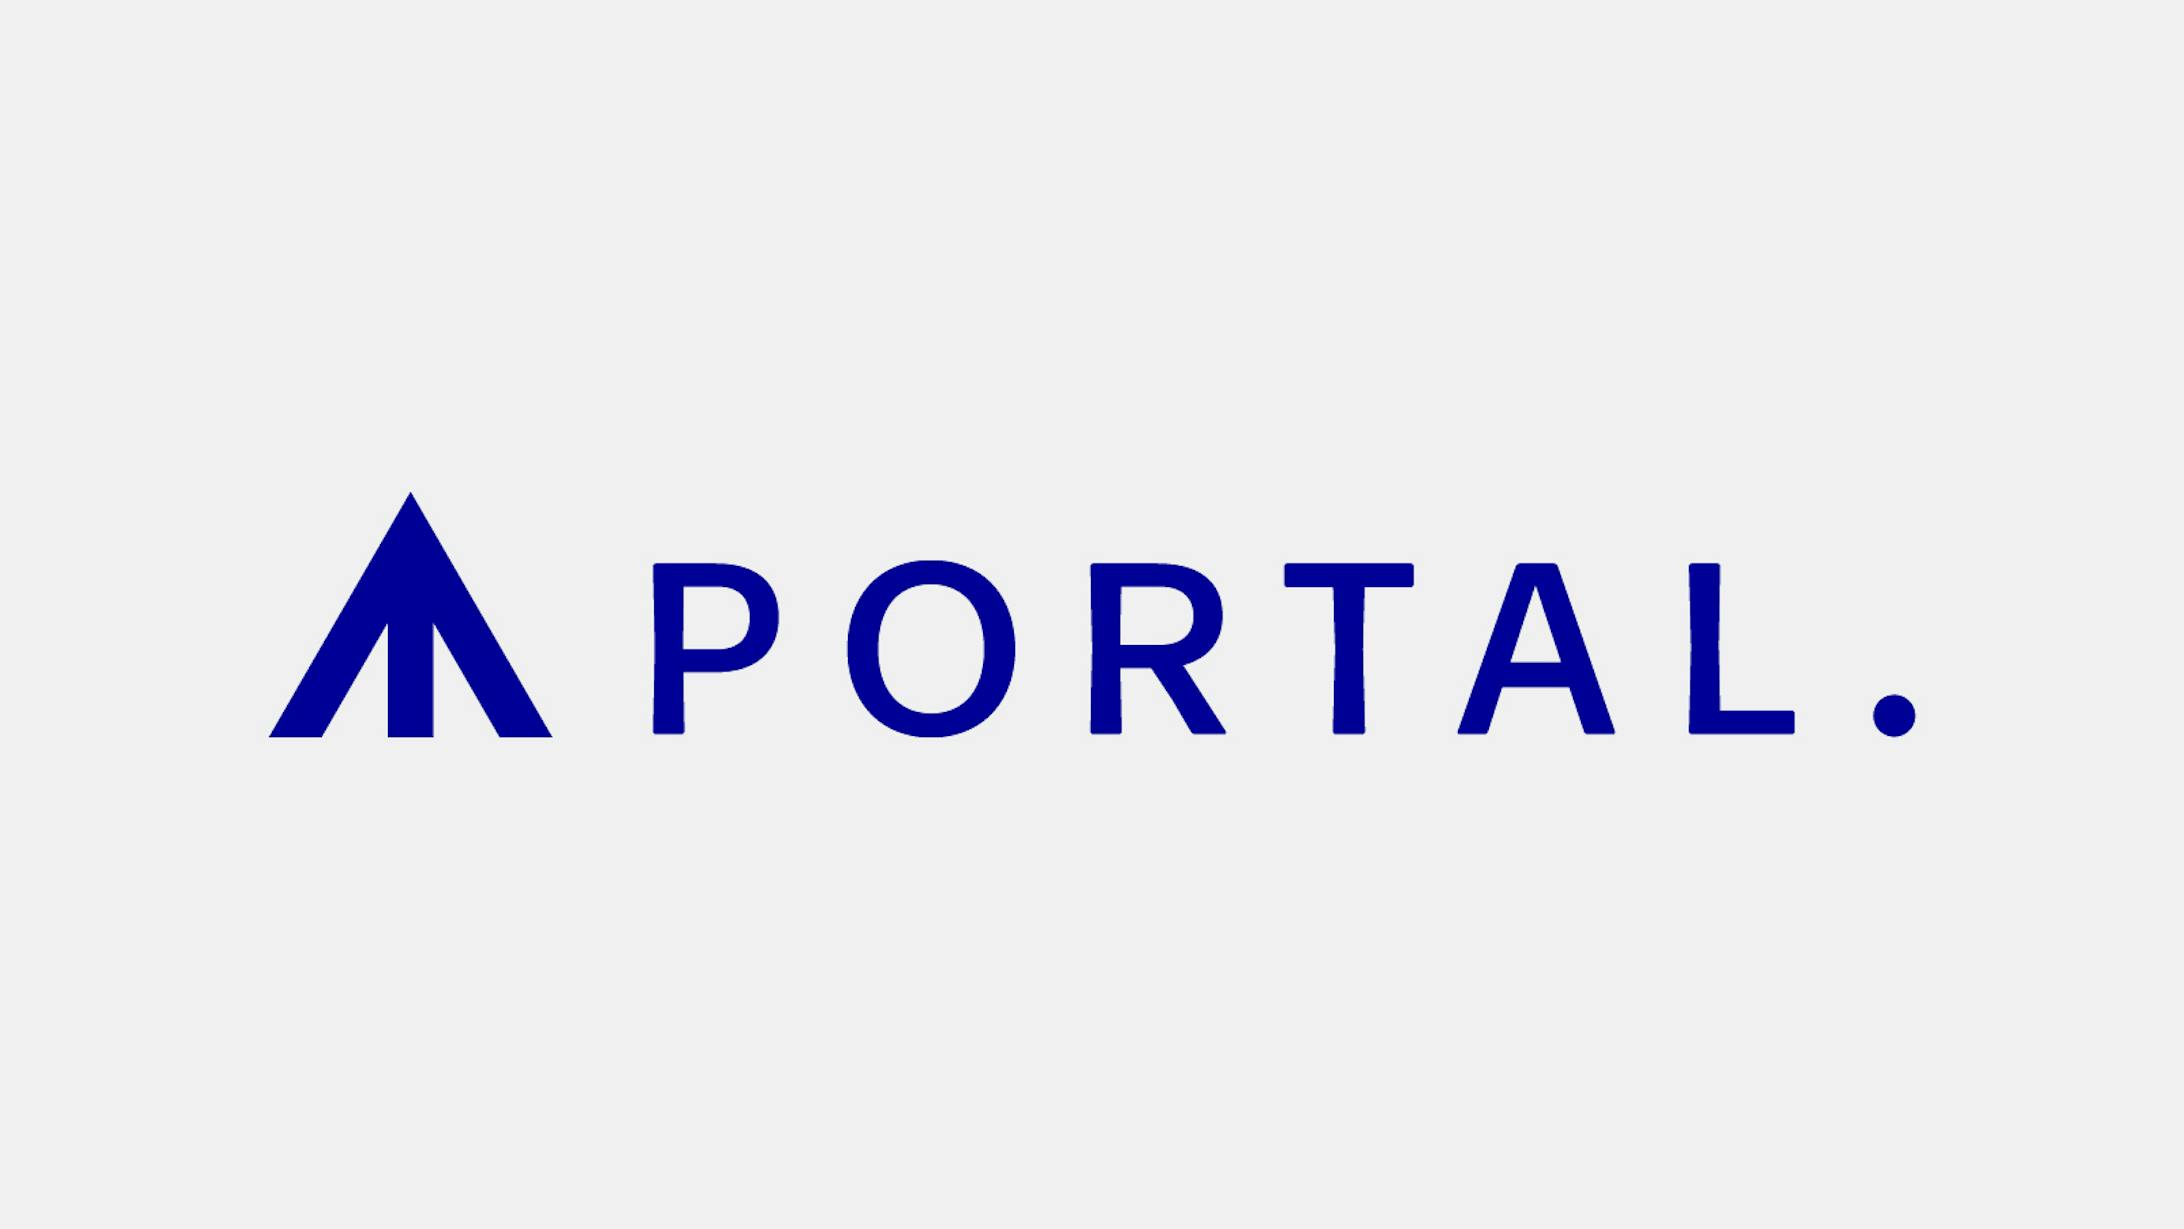 PORTAL. Co.,Ltd.-1